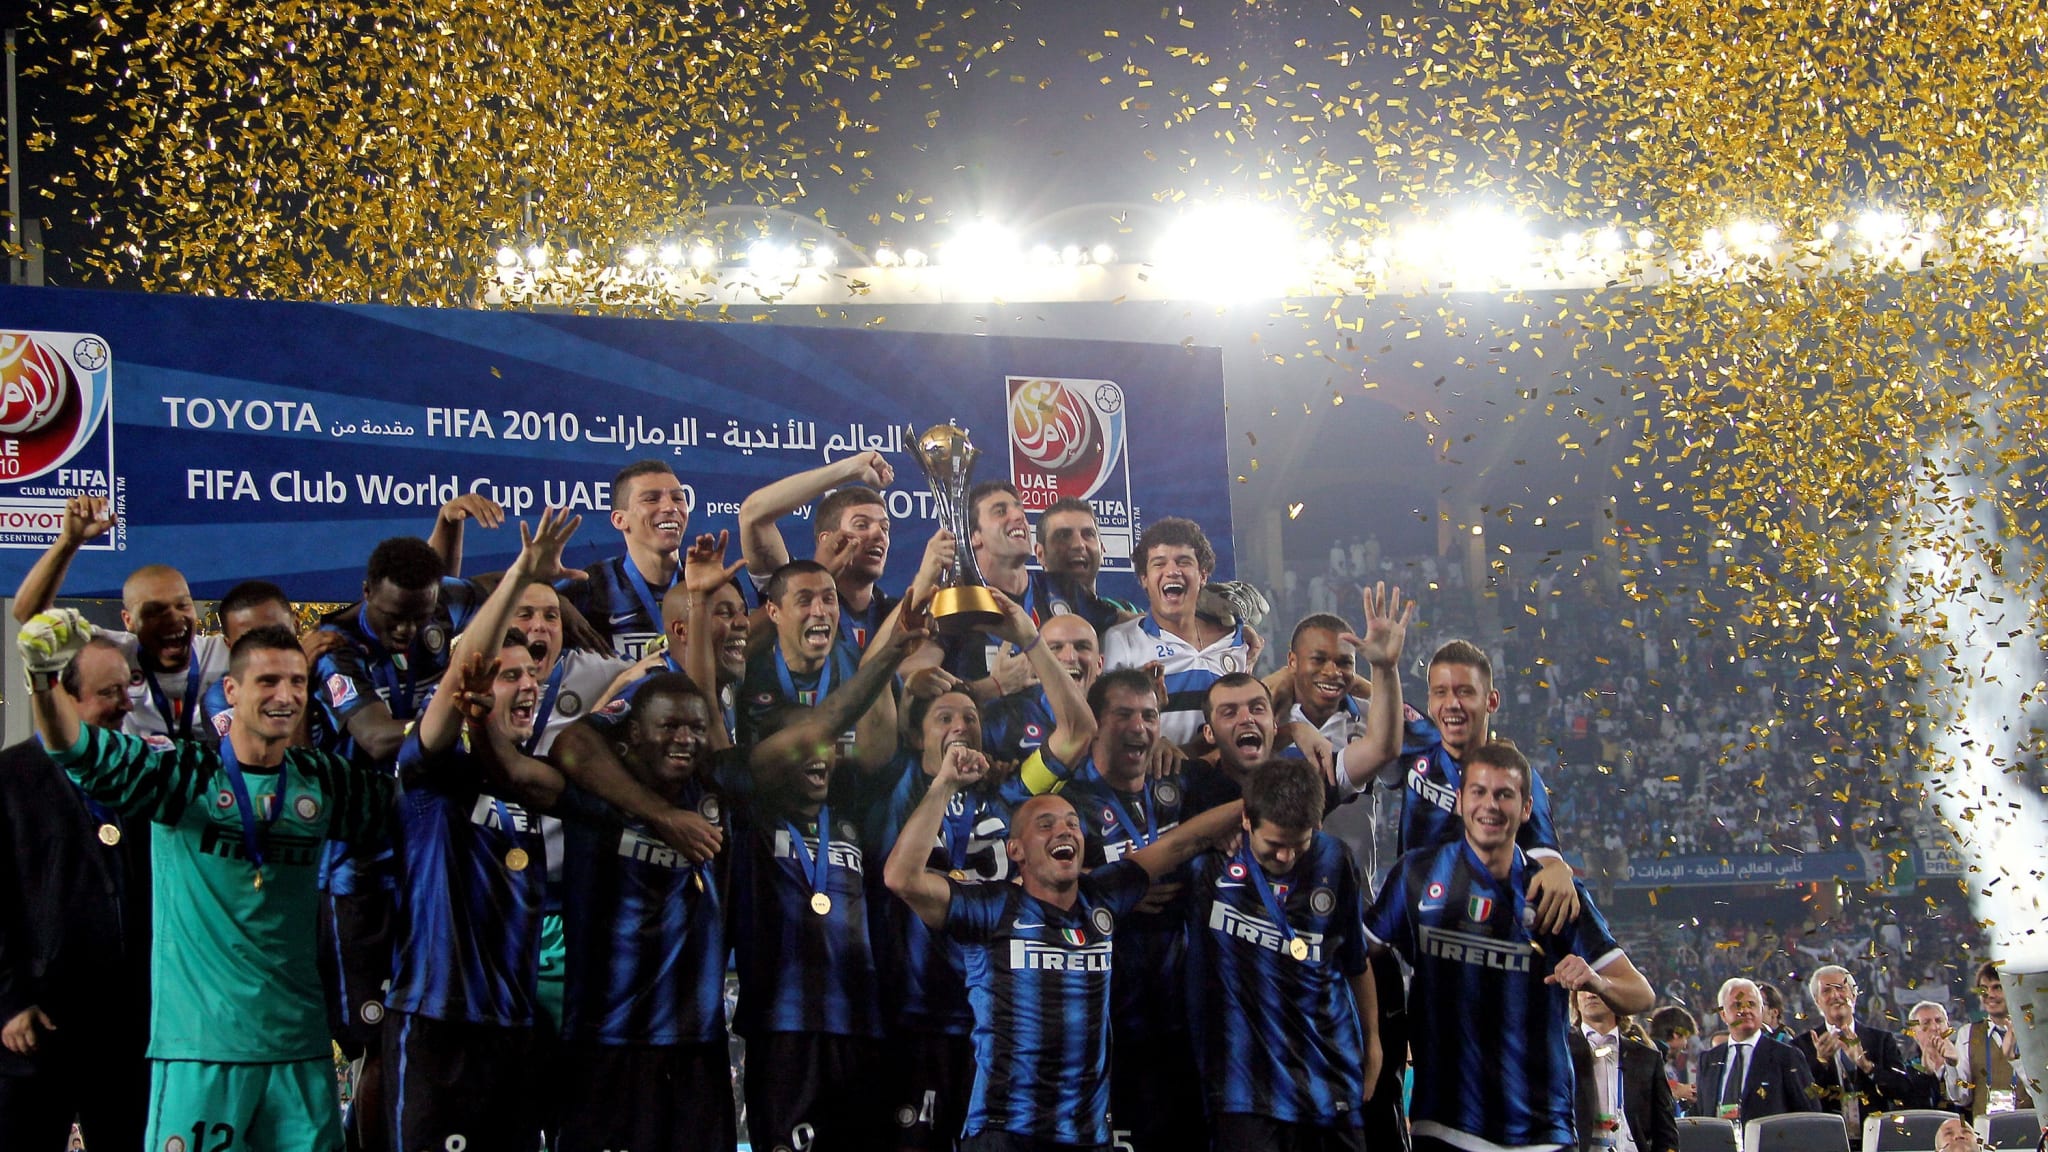 A Inter de Milão foi comprada em 2016 pelo chinês Zhang Jindong. Ainda não conquistou títulos após a venda do clube, mas voltou a investir pesado na contratação de grandes jogadores e disputar troféus de forma competitiva.